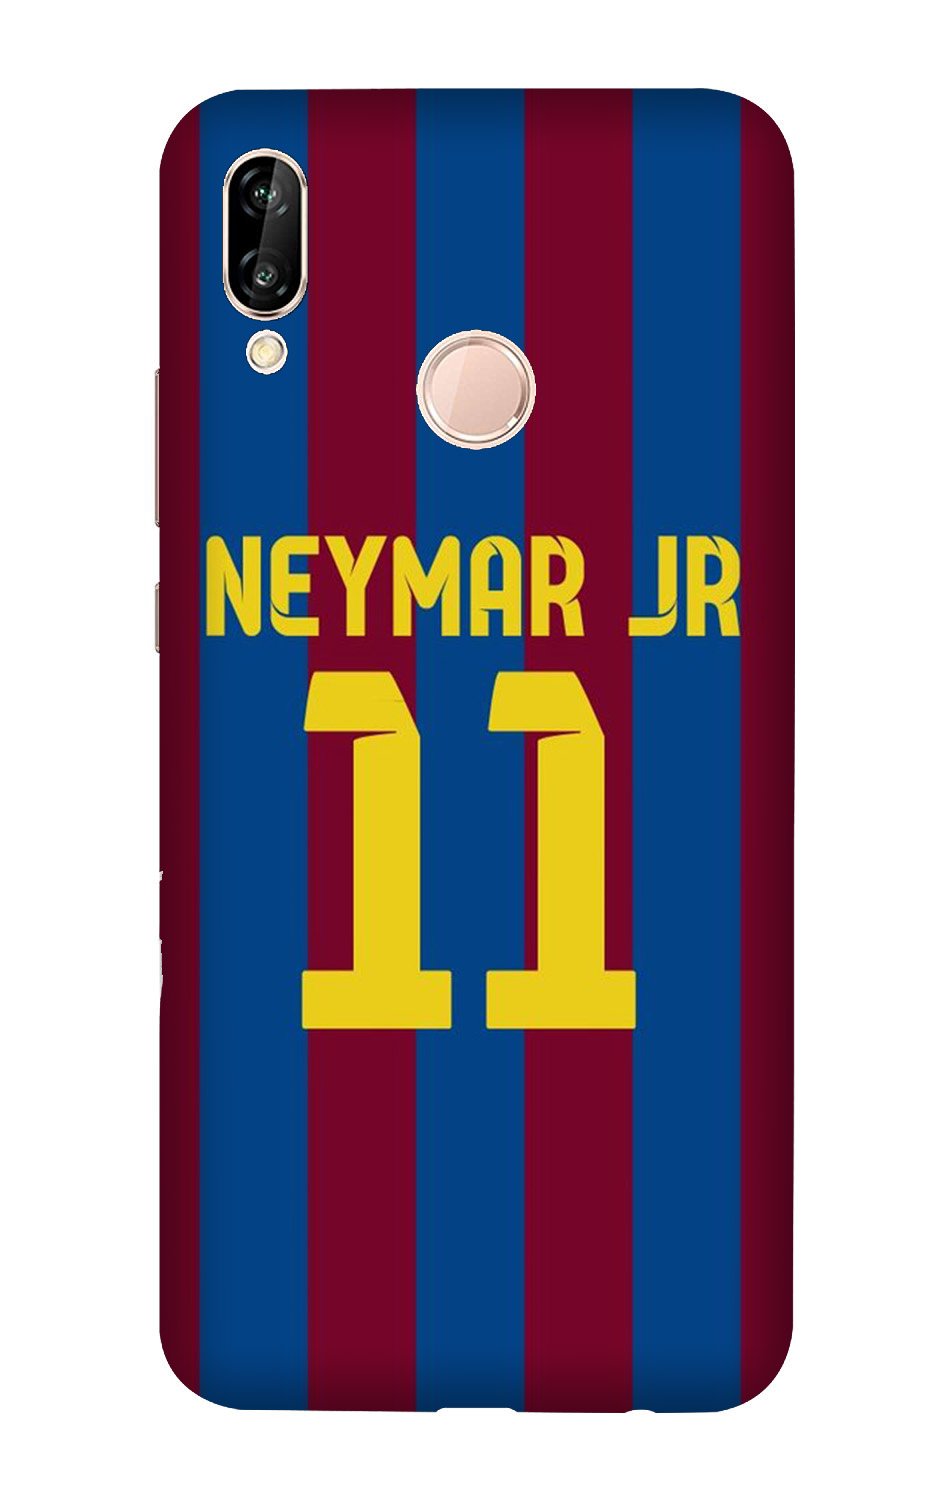 Neymar Jr Case for Honor 10(Design - 162)